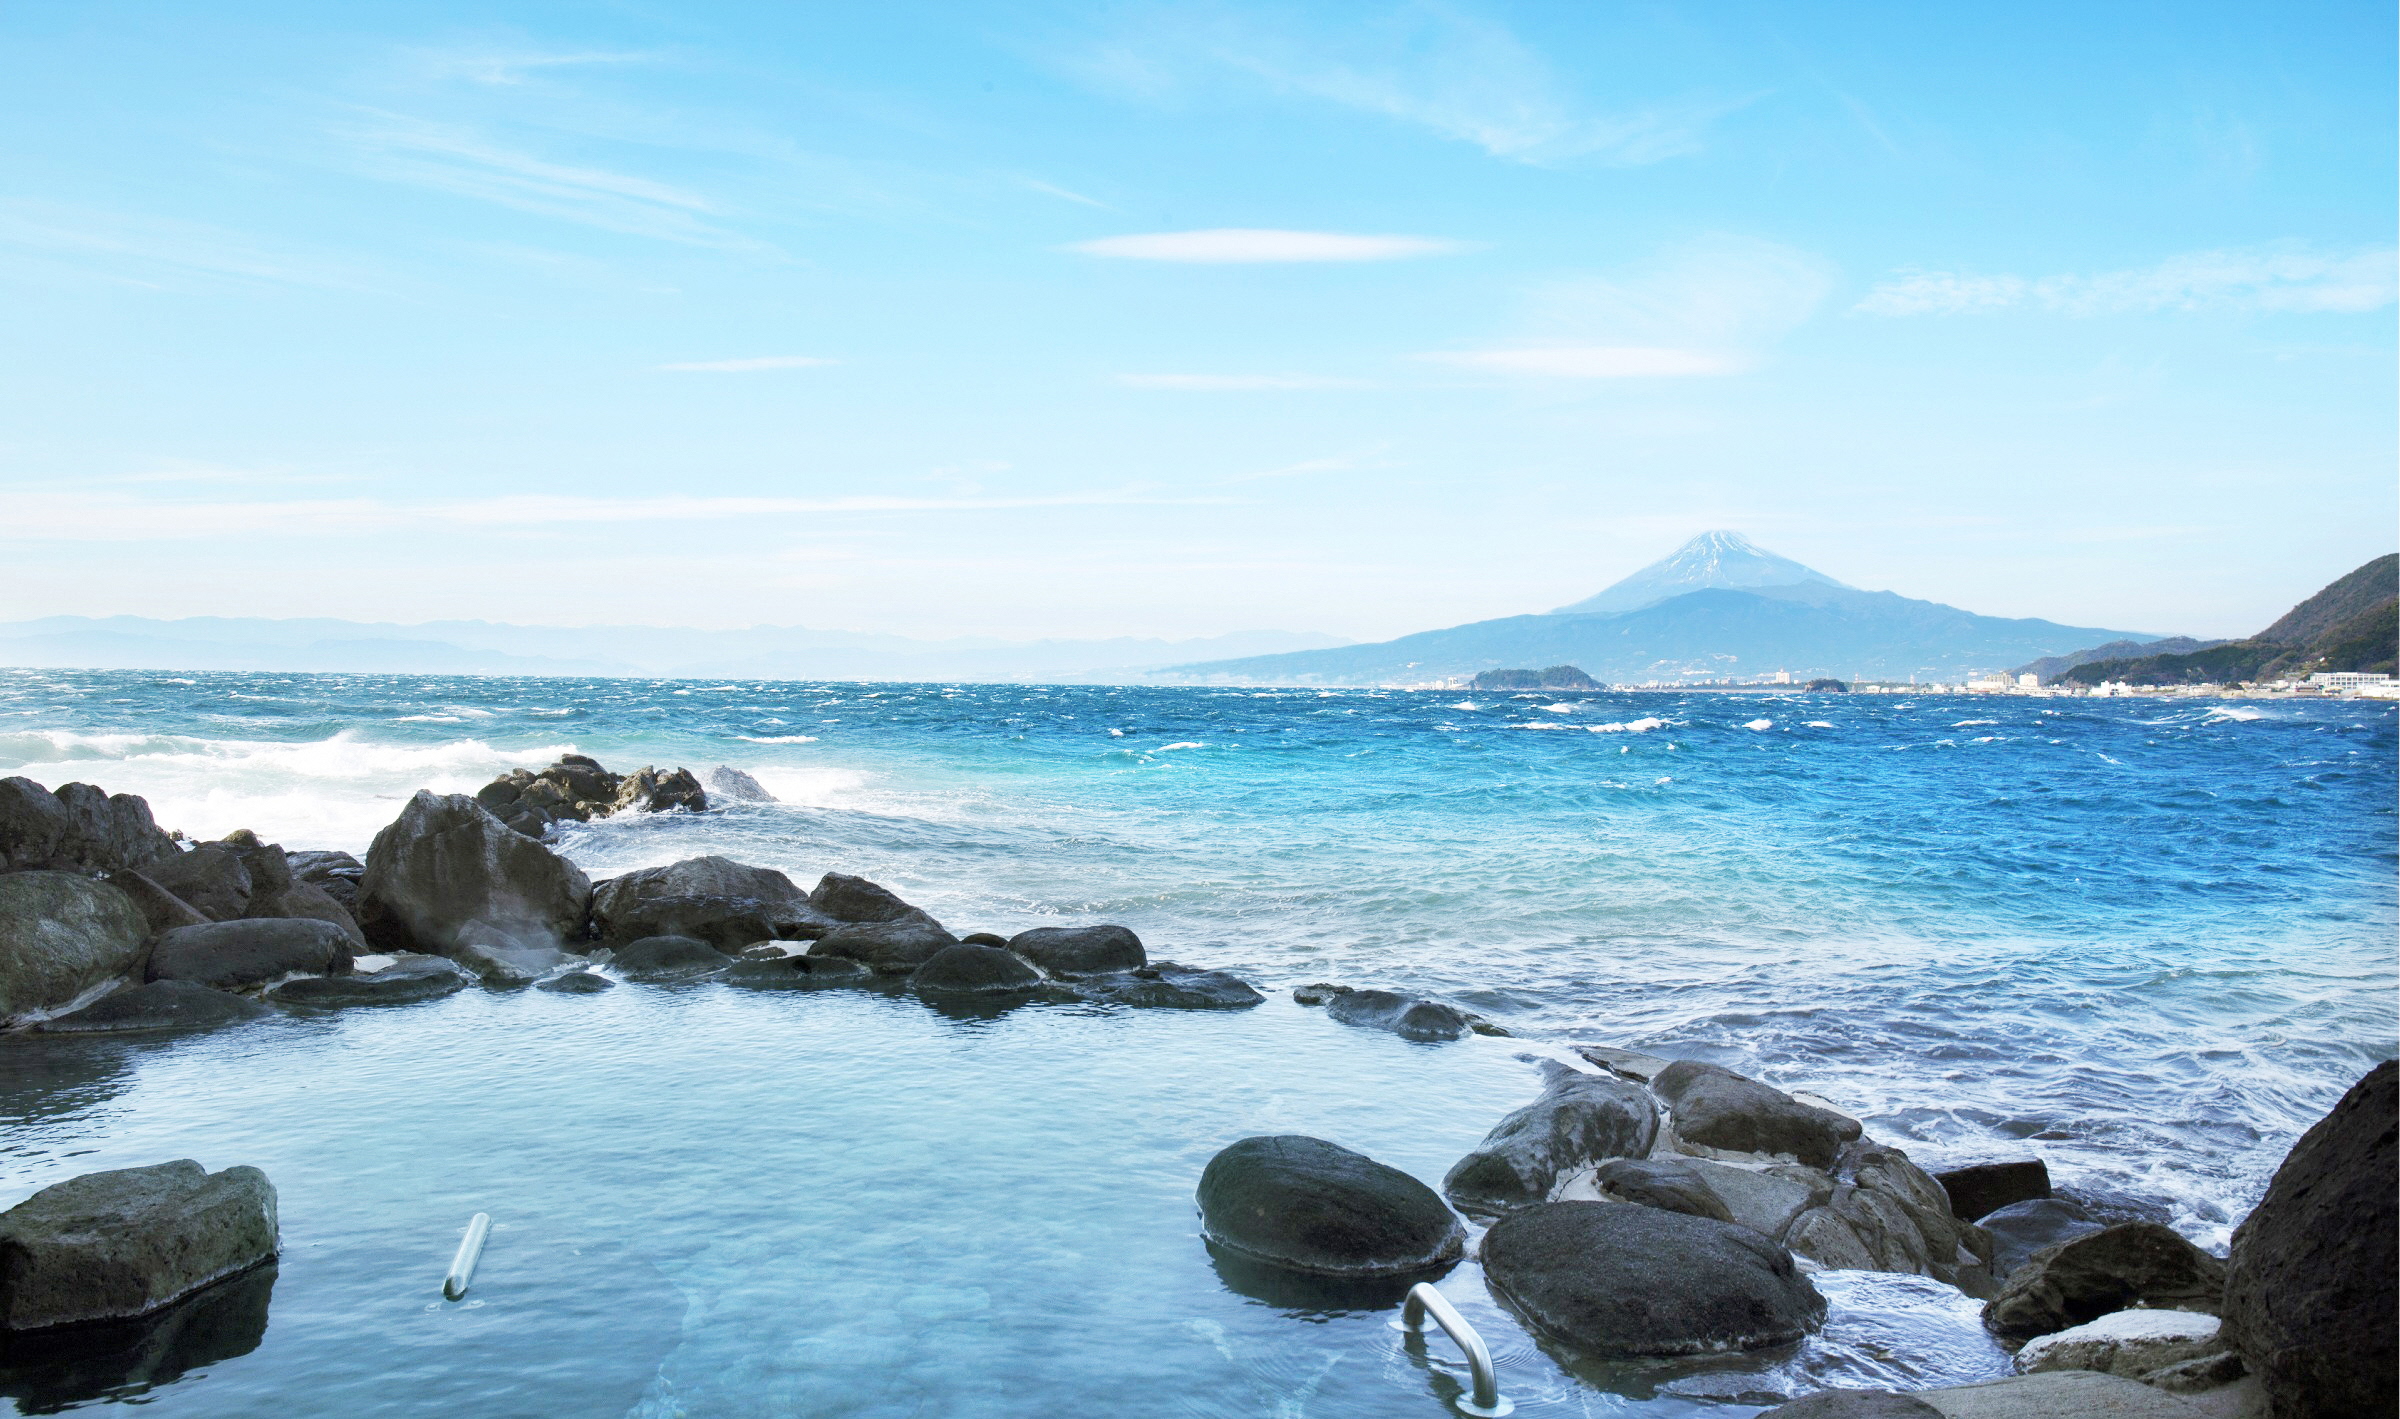 駿河湾越しに雄大な富士山を眺めながら癒しのひとときを。